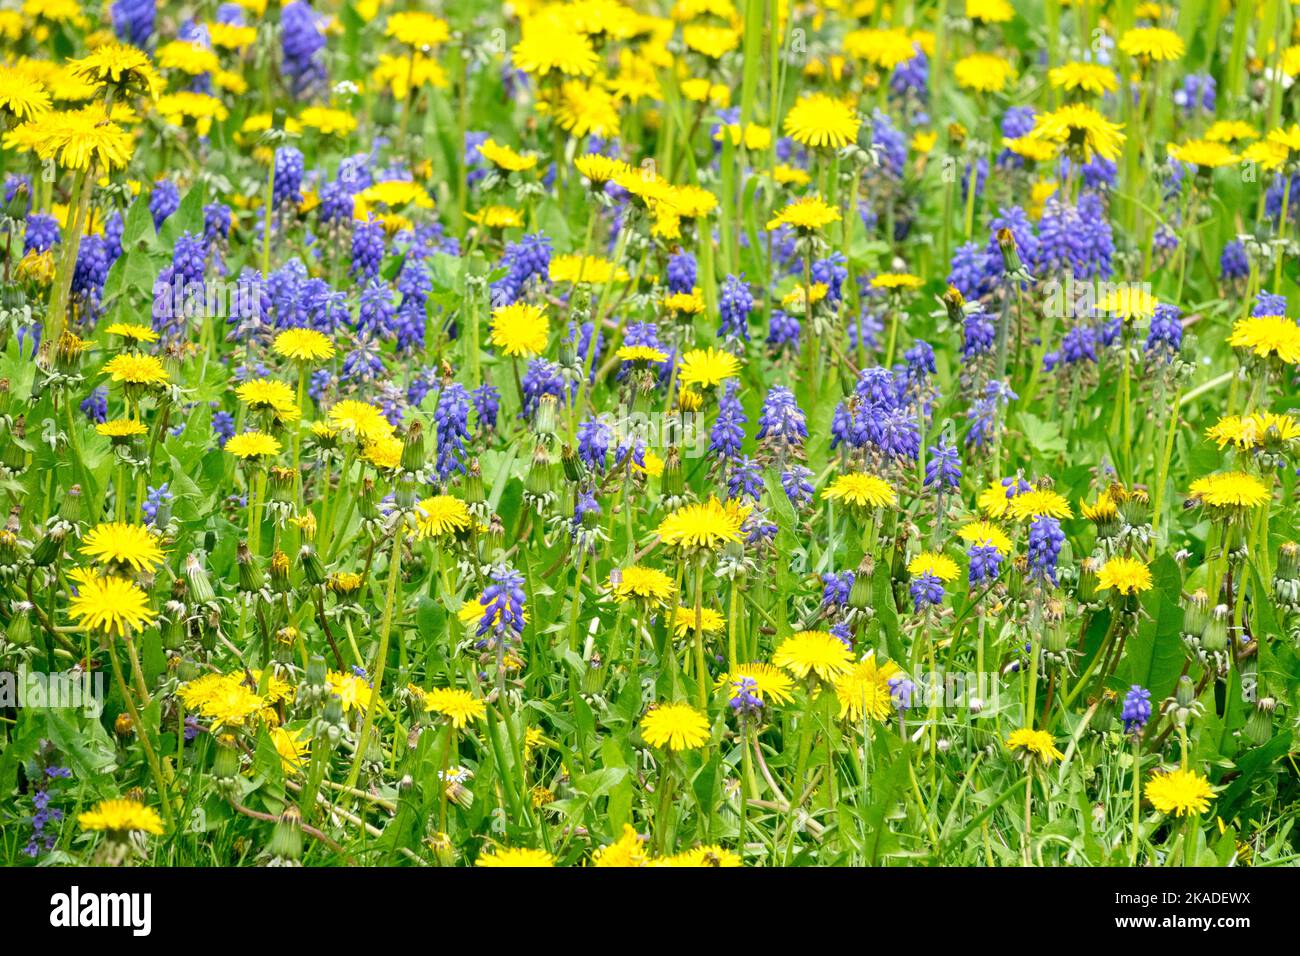 Dandelions Muscari prato Primavera Prato Fiori giallo Fiori Blu giallo Blu Dandelions Taraxacum officinale Muscari armeniacum campo Giacinto d'uva Foto Stock